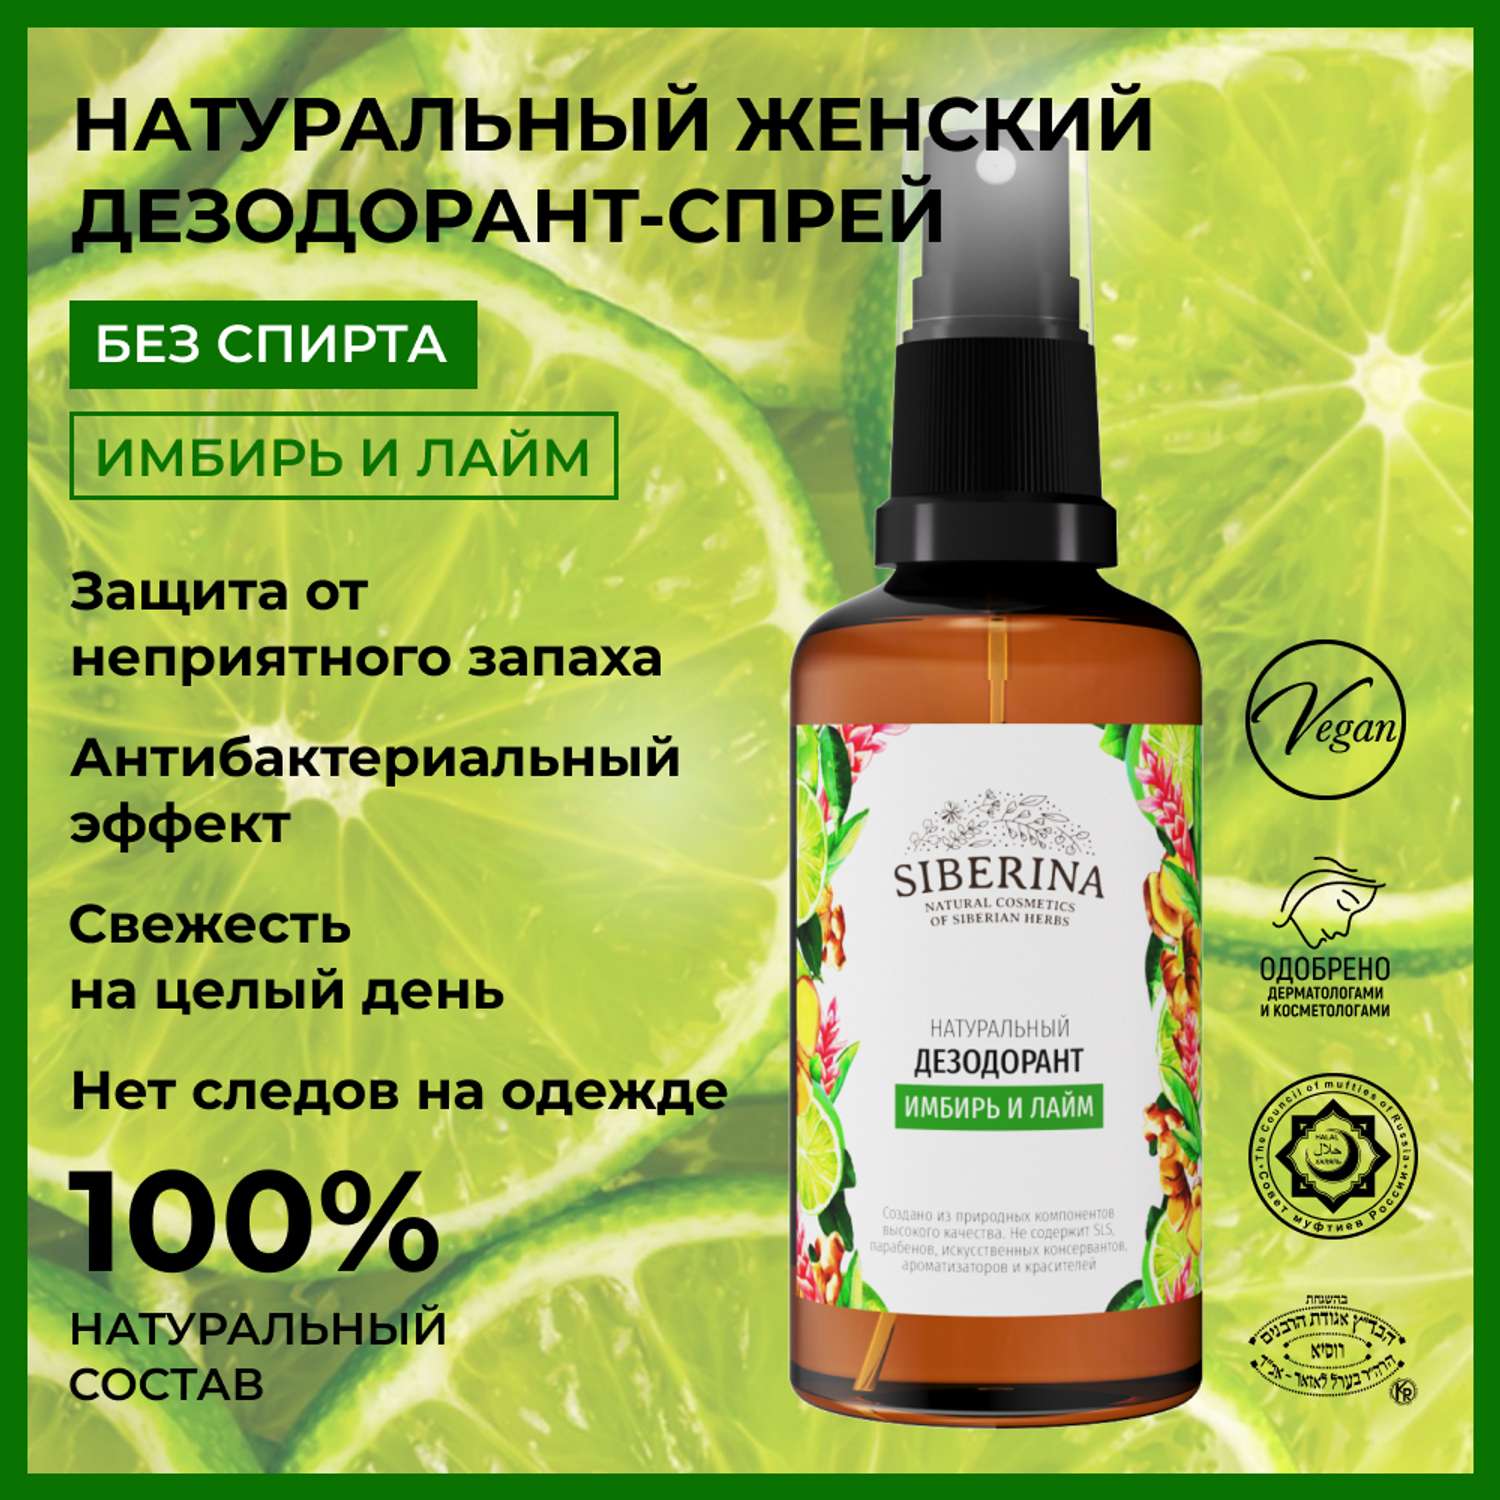 Дезодорант-спрей Siberina натуральный «Имбирь и лайм» для чувствительной кожи 50 мл - фото 2